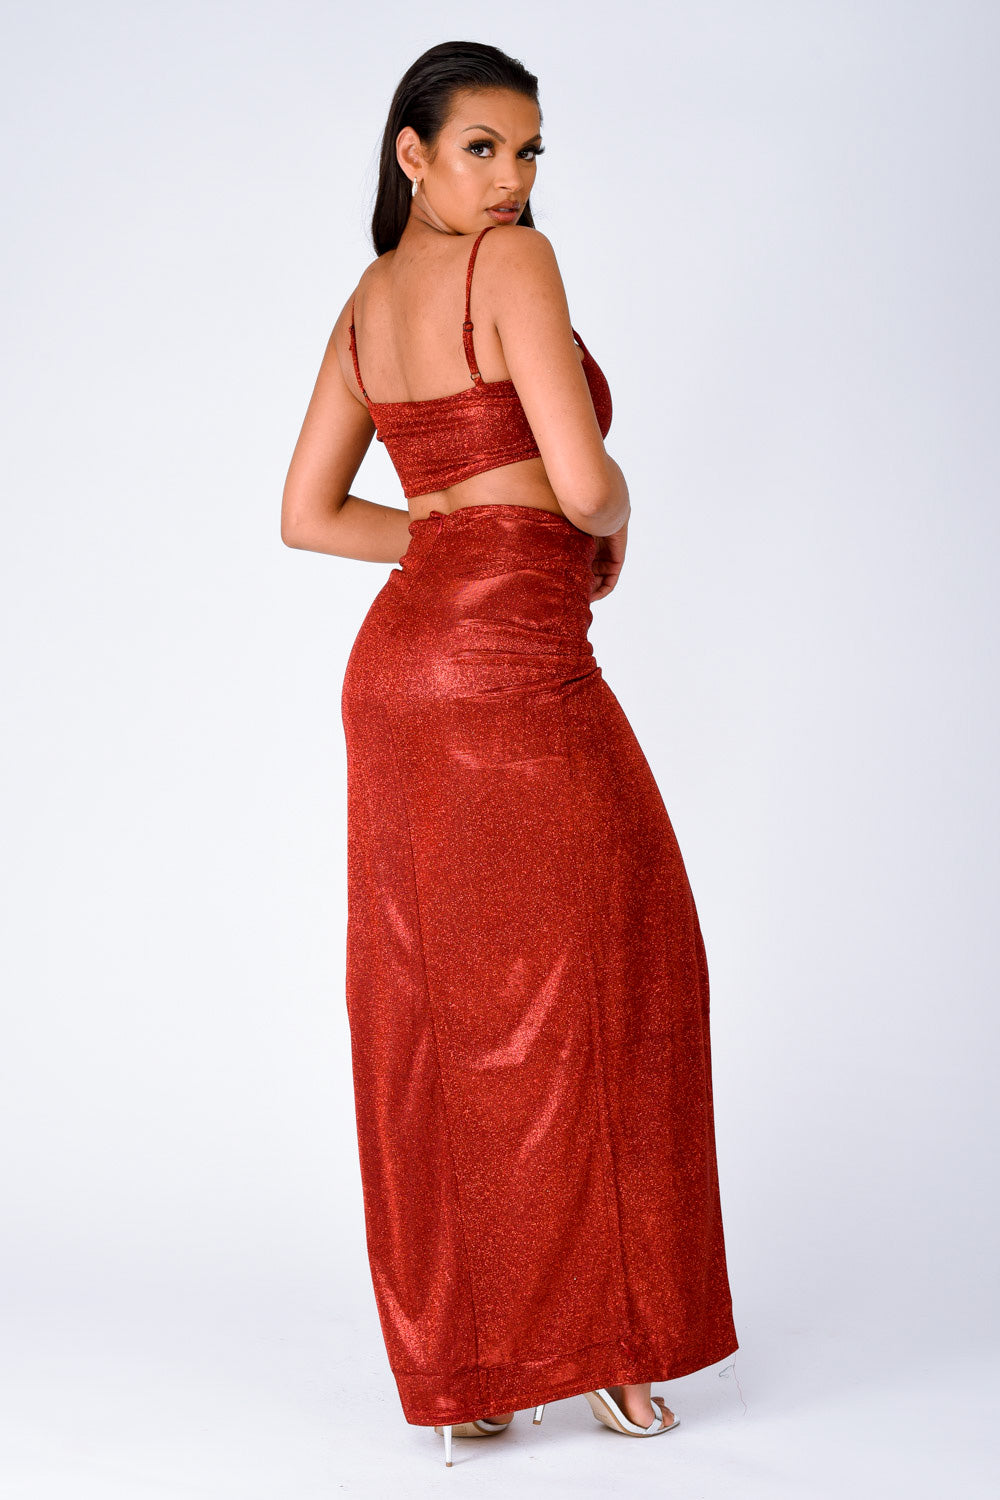 Cuba Red Metallic Glitter Crop Top Thigh Slit Skirt Two Piece Co ord Set